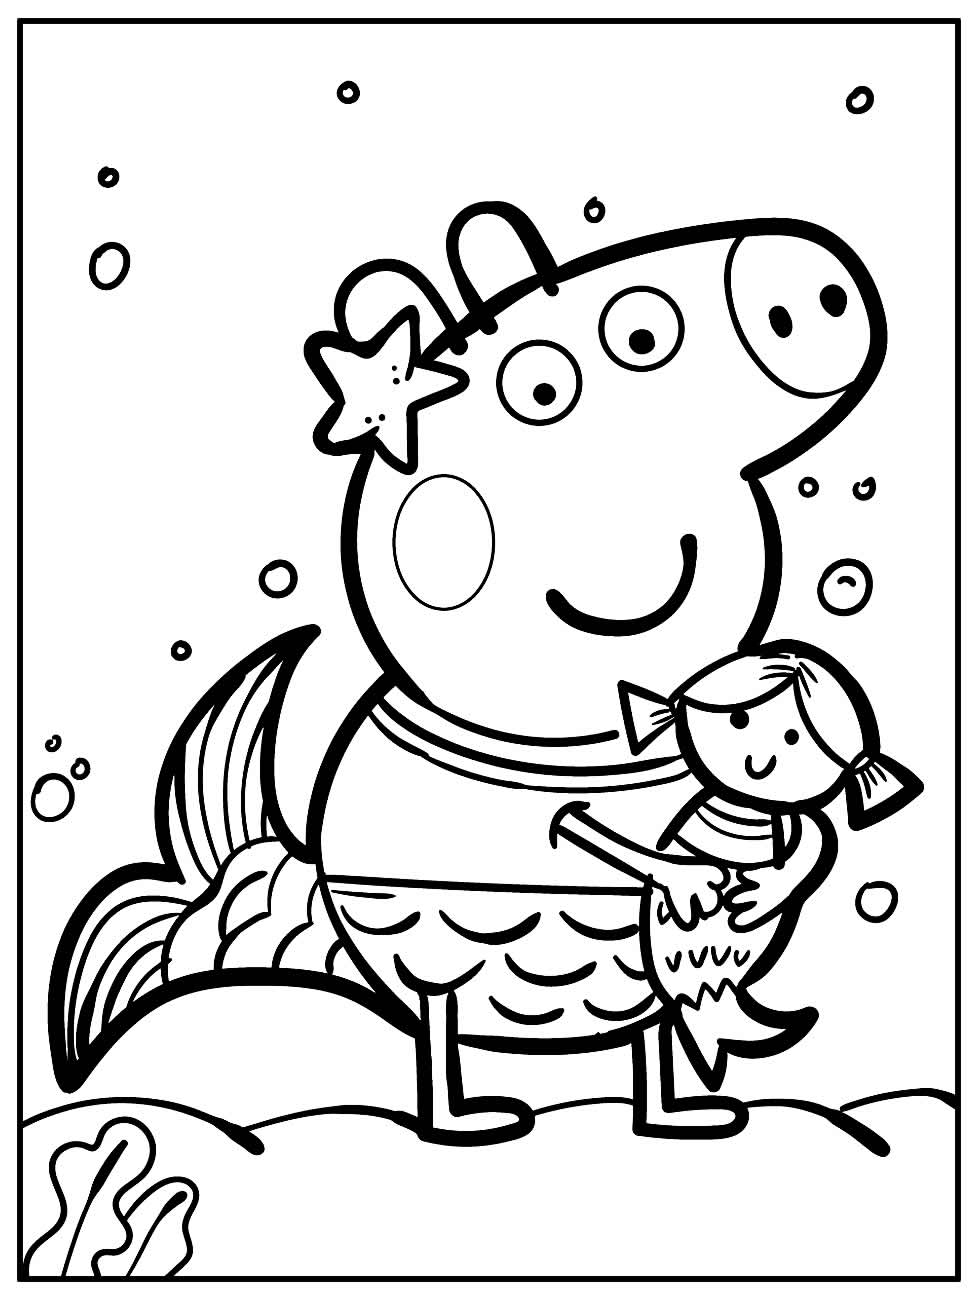 Desenhos da Peppa Pig para Colorir e Imprimir - Desenhos para Pintar -   Peppa pig para colorir, Desenhos para colorir peppa, Páginas para colorir  de unicórnio